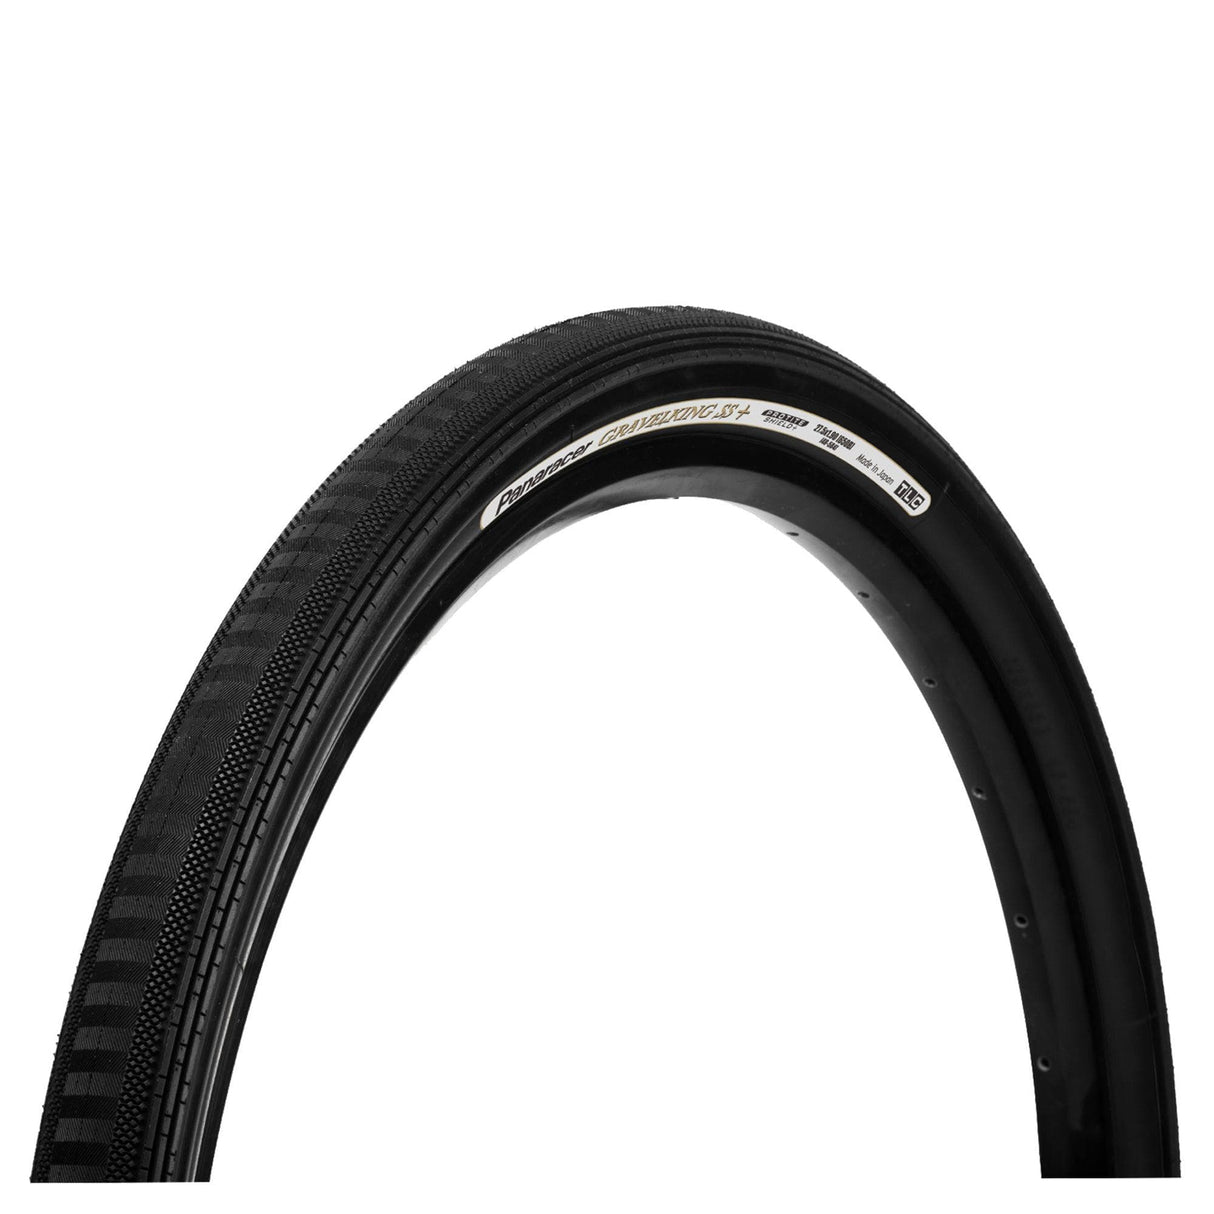 Panaracer Gravelking Semi Slick Plus Tlc Folding Tyre: Black/Black 700X32C